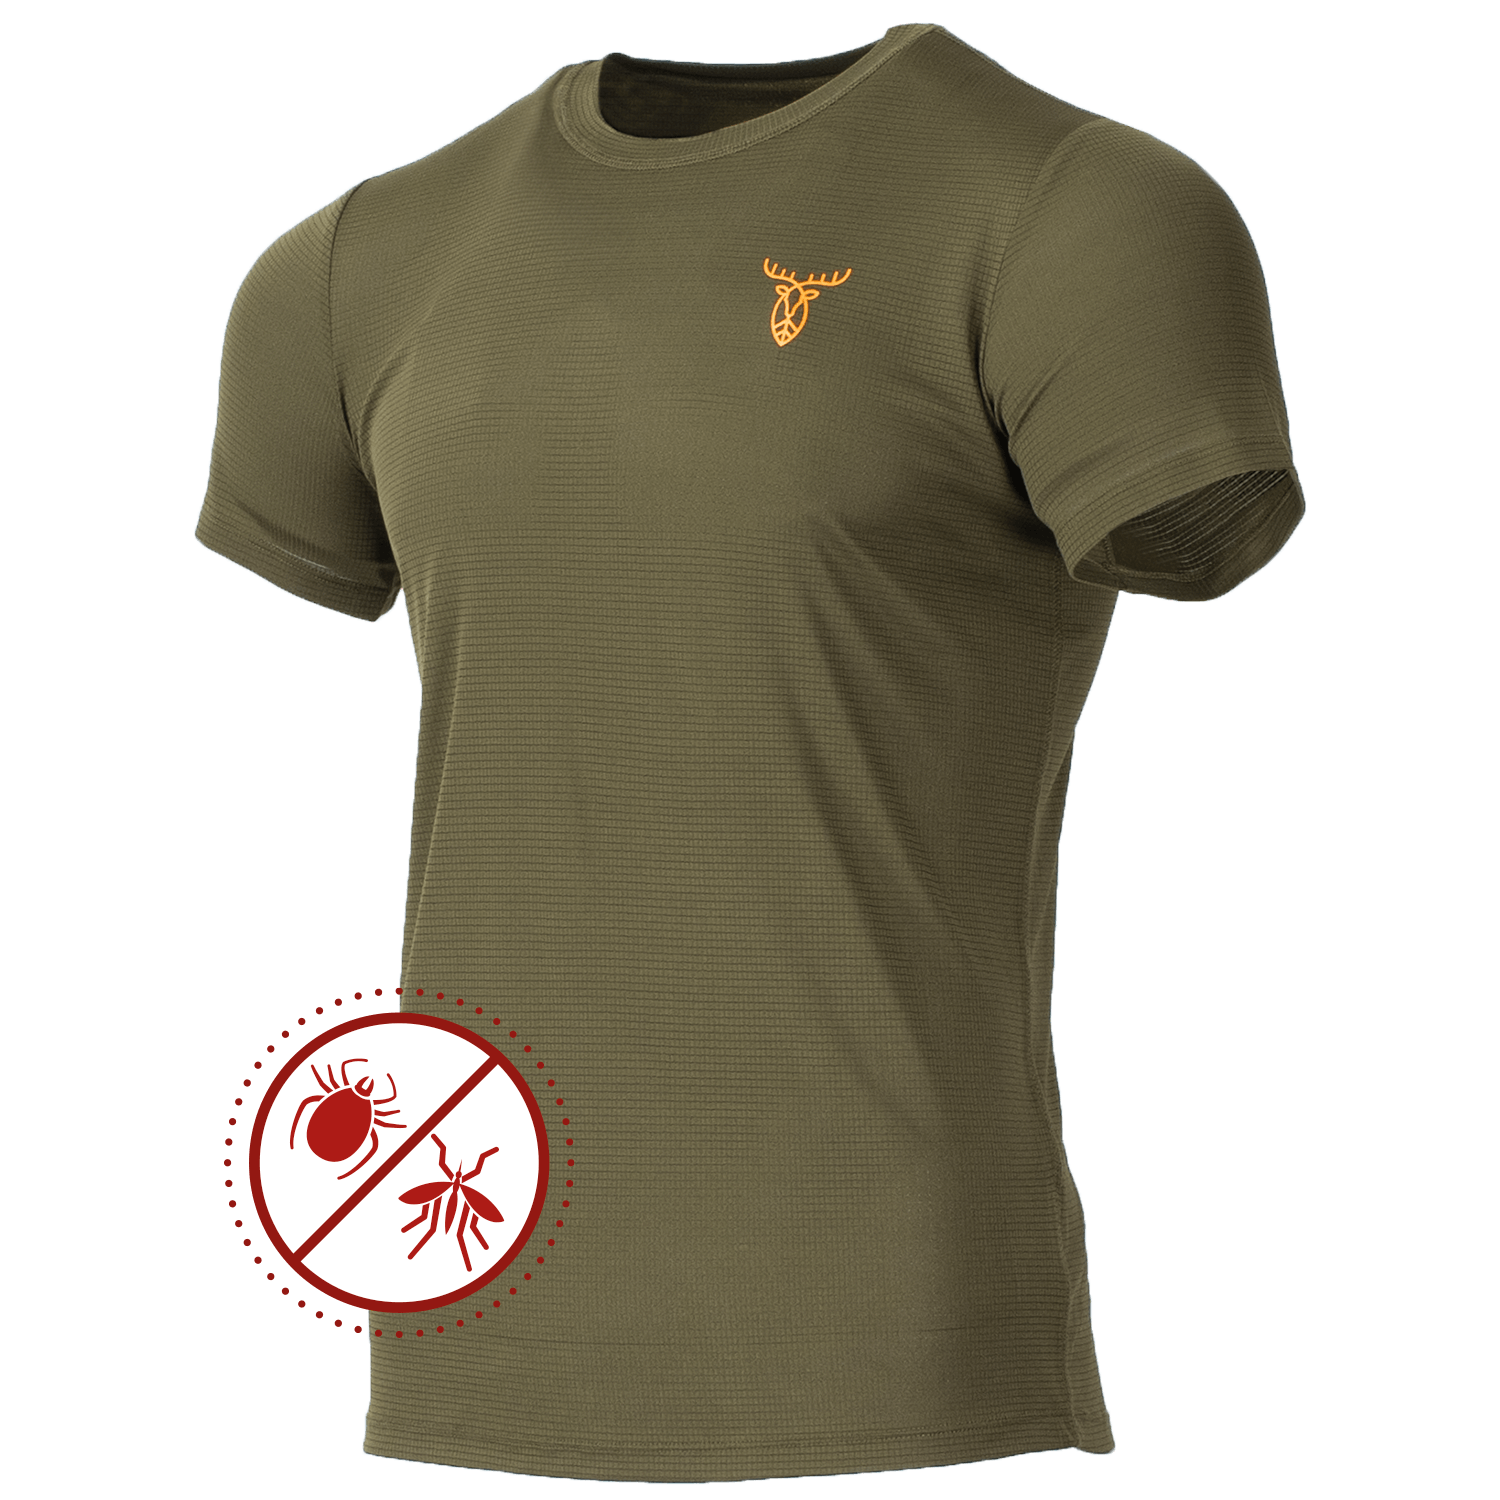  Pirscher Gear Ultralicht Tanatex T-shirt - Jachtshirts